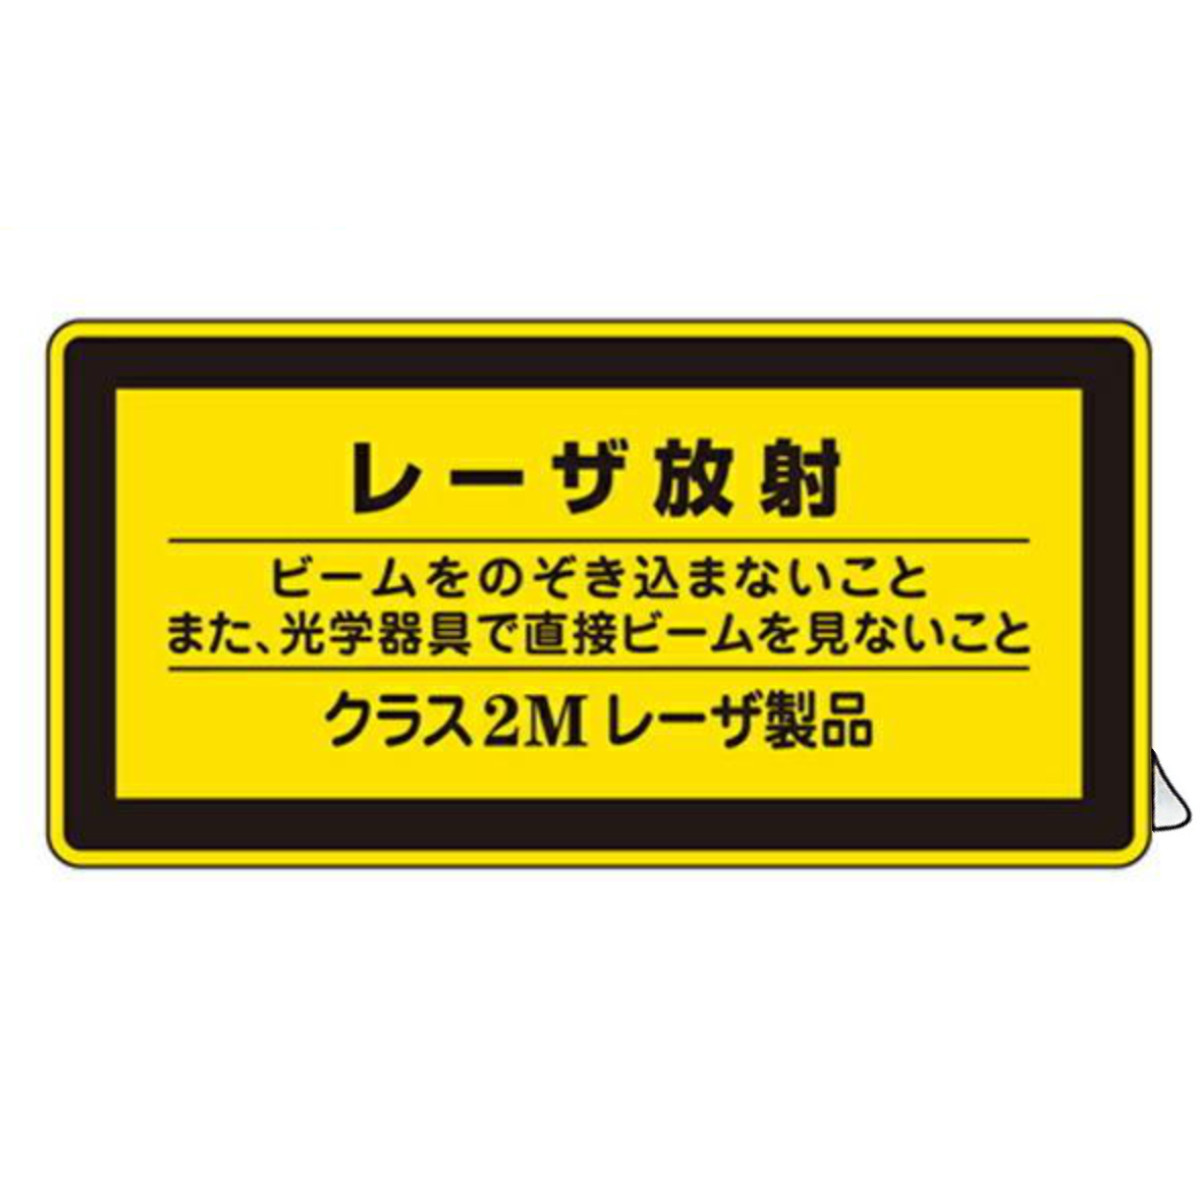 JISレーザ標識ステッカー 「 レーザ放射 クラス2Mレーザ製品 」 小 10枚組 （ 安全標識 表示シール レーザ光 ステッカー シール ラベル